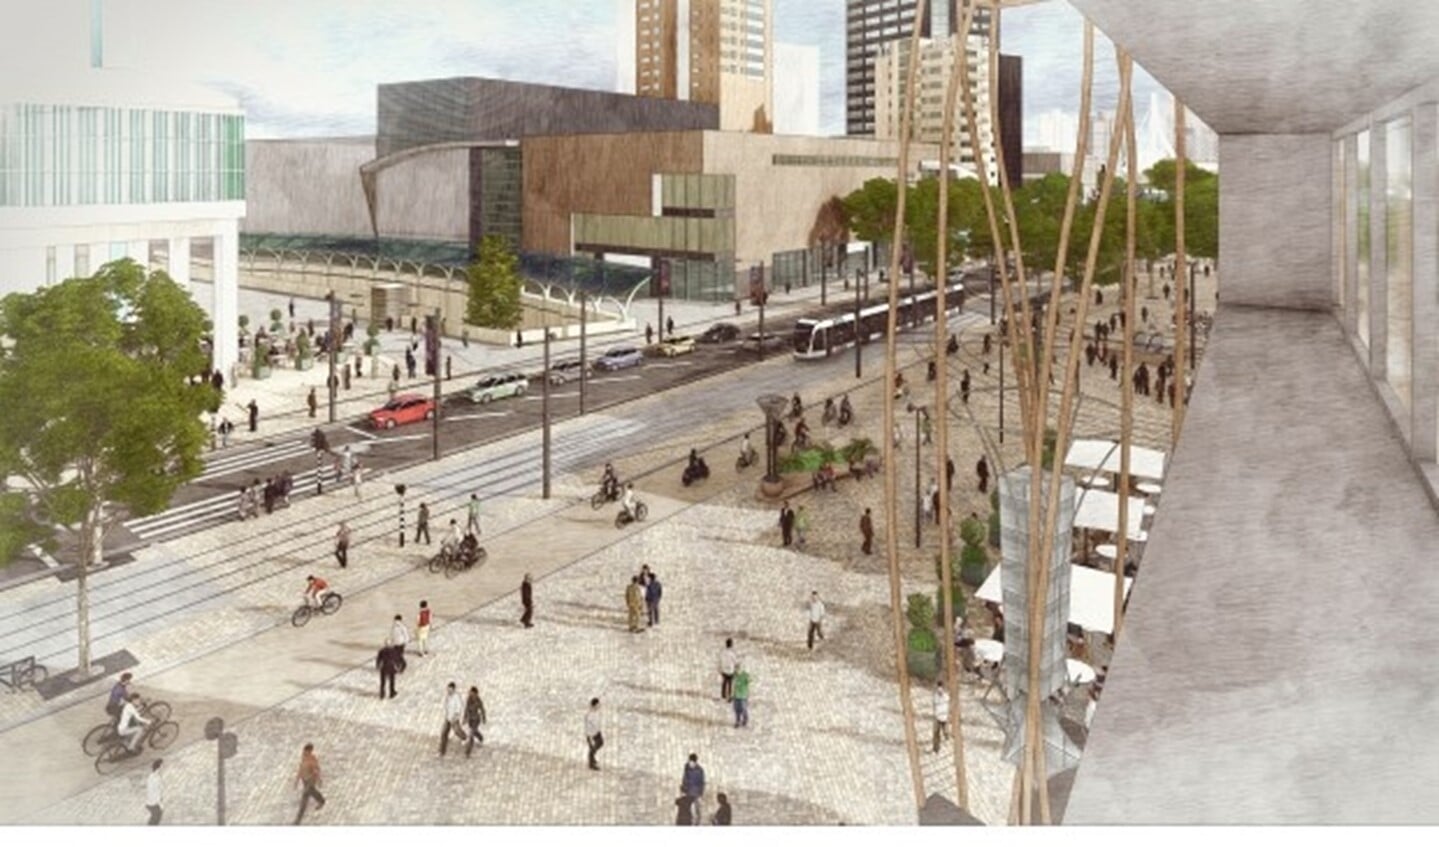 In 2020 wordt dit de nieuwe Coolsingel. Duurzamer, ironischer en voetgangersvriendelijk is het idee. Sommige mensen vinden dat hierdoor het iconische verdwijnt, maar veel vinden het prima binnen het beeld van Rotterdam passen.(foto: artist impression)